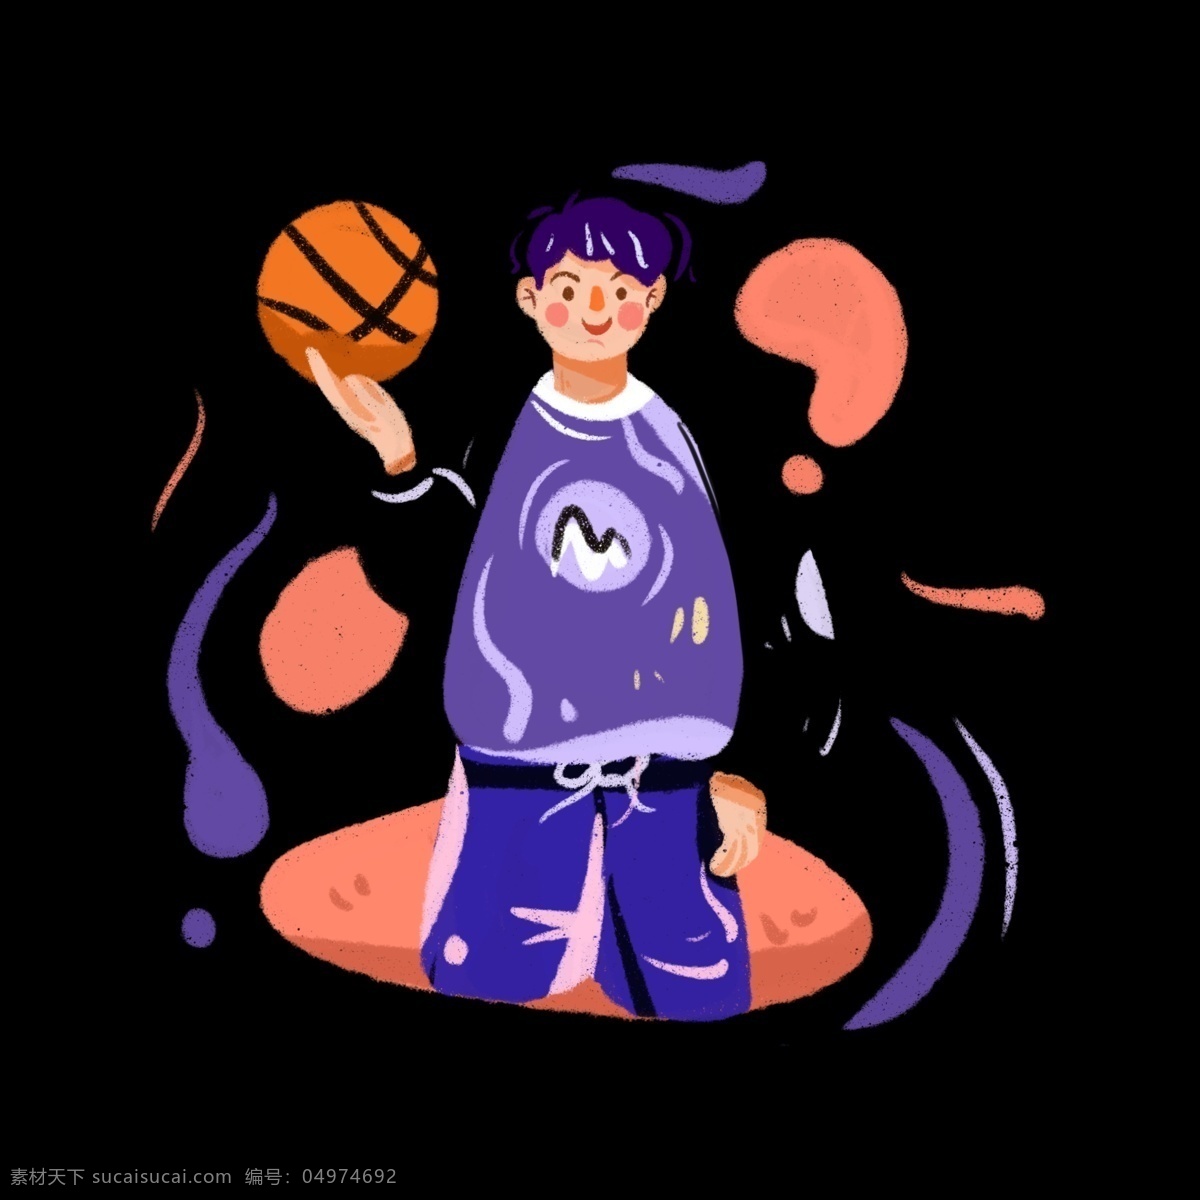 即将 上场 篮球 男孩 手绘 插画 免 抠 篮球比赛 打篮球的少年 运动风男孩 运动服 banner 手绘插画 彩色系插画